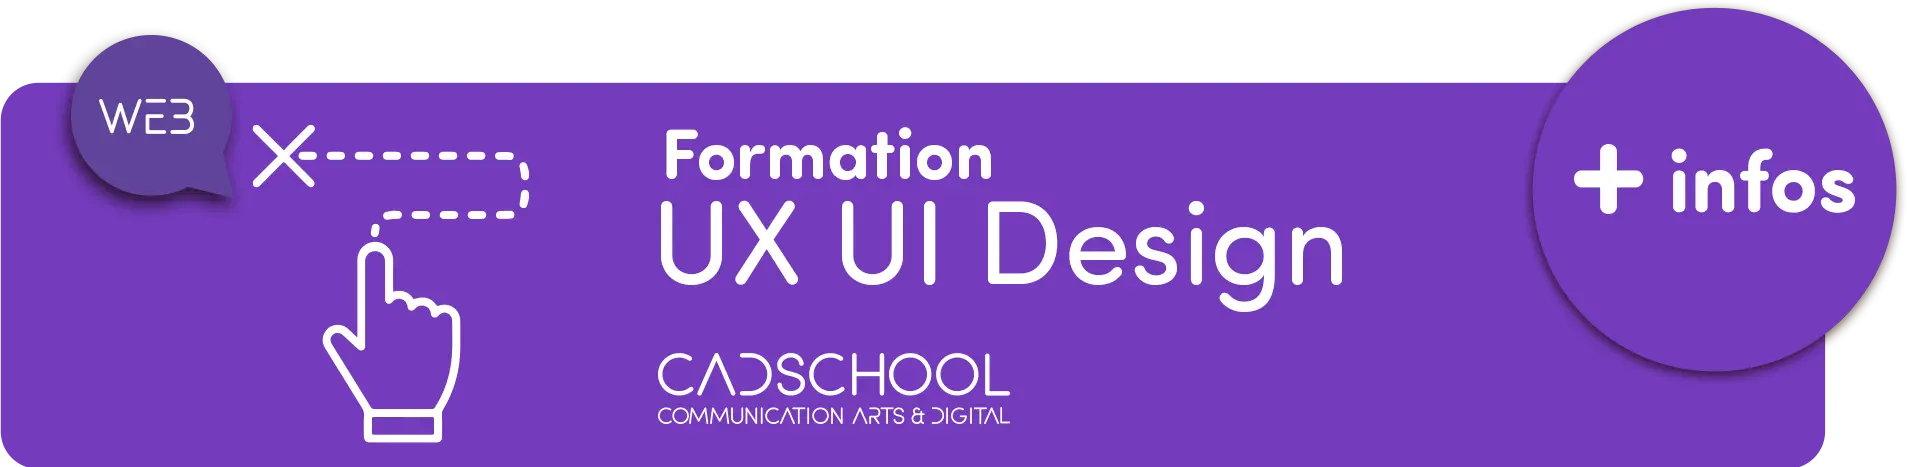 formation UX UI Design